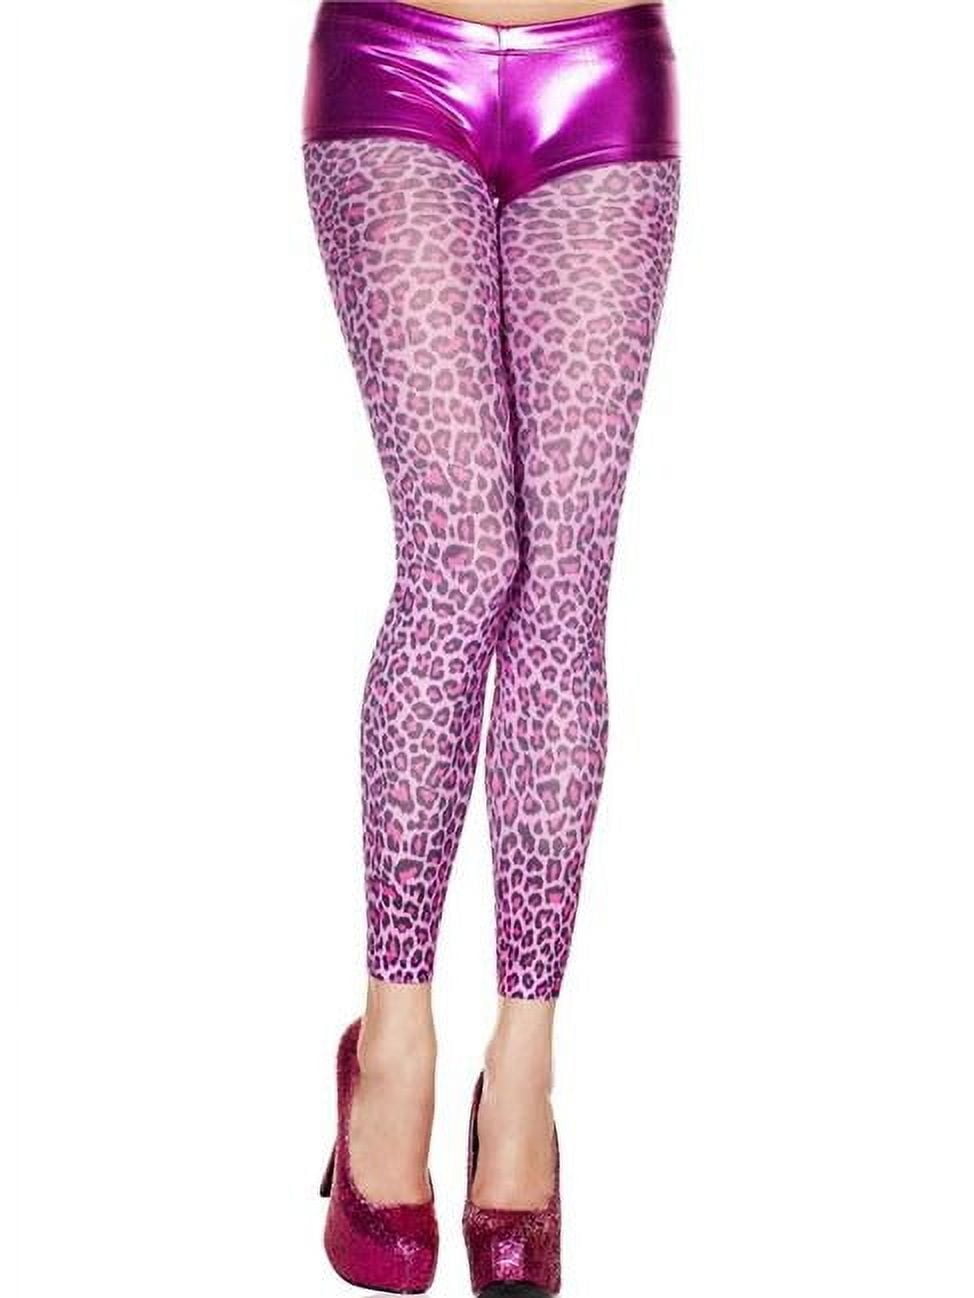 Calcetines de compresión estampados Prestige Leopard Hot Pink para